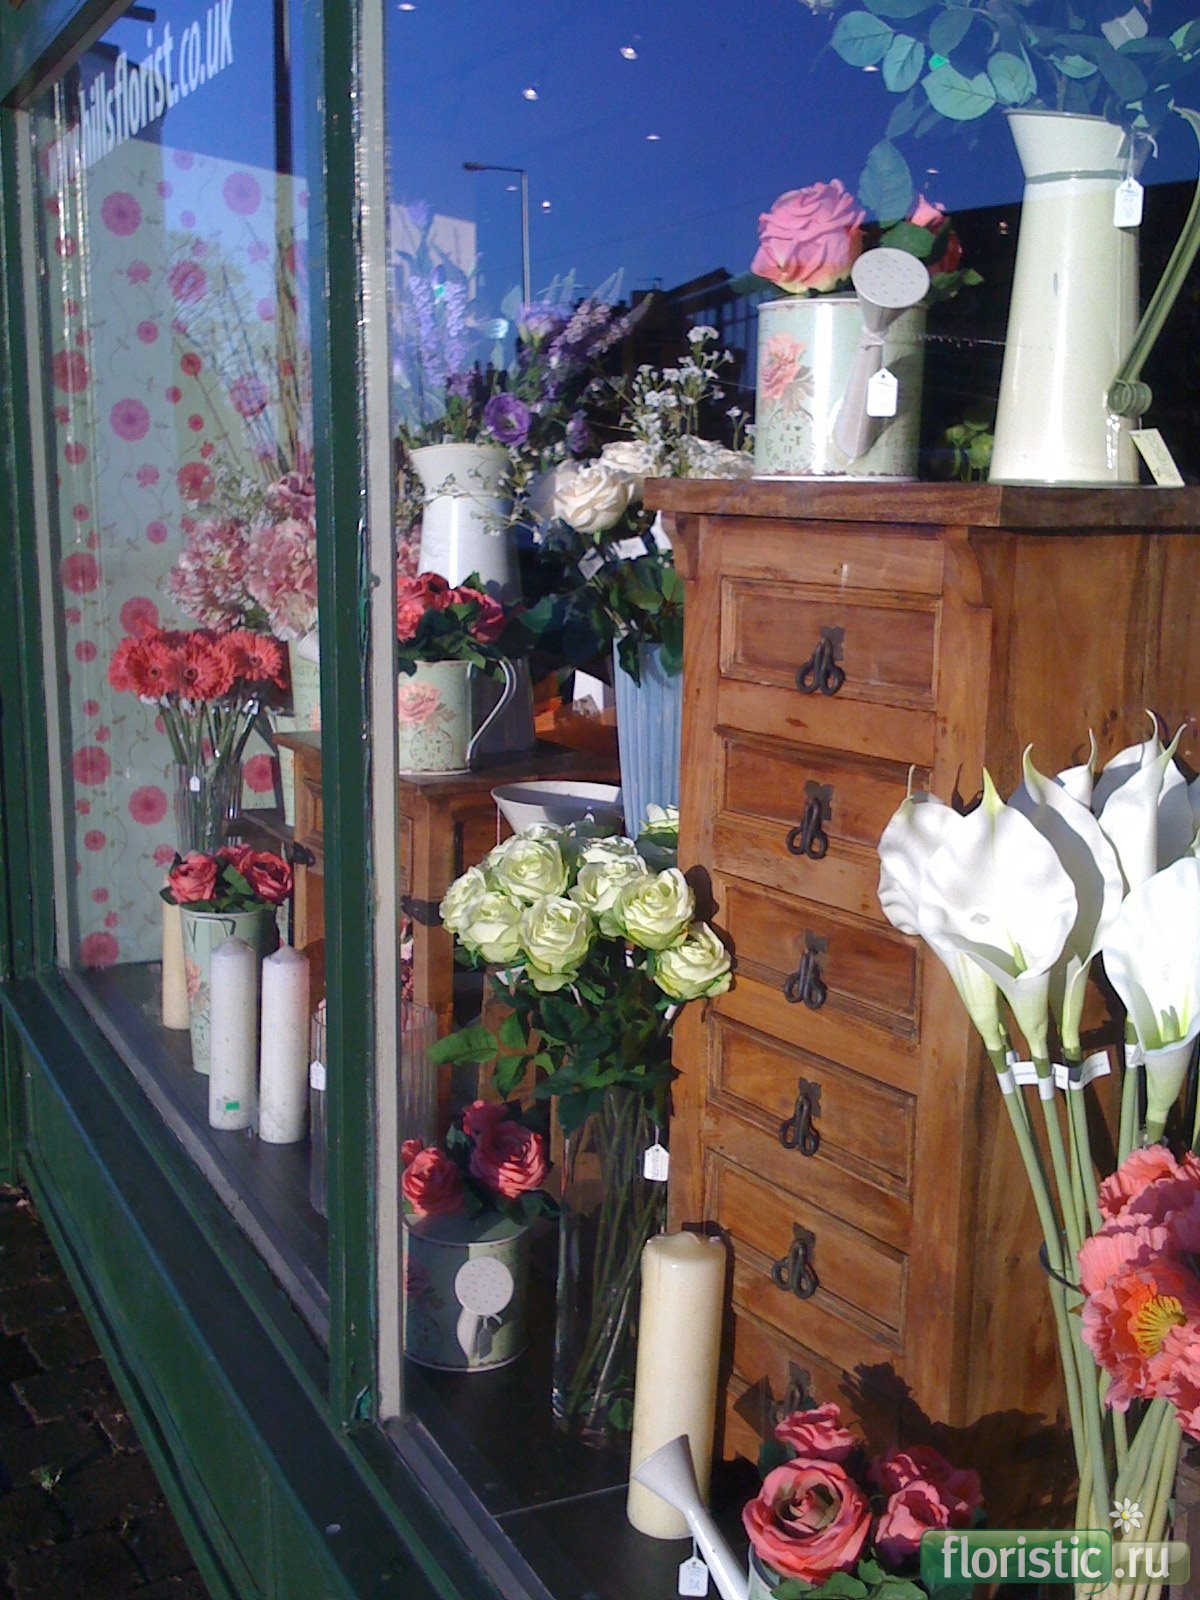 Bufl ru интернет магазин. Витрина цветочного магазина. Вазы для цветочного магазина на витрину. Необычные витрины цветочных магазинов. Оформление витрины цветами.